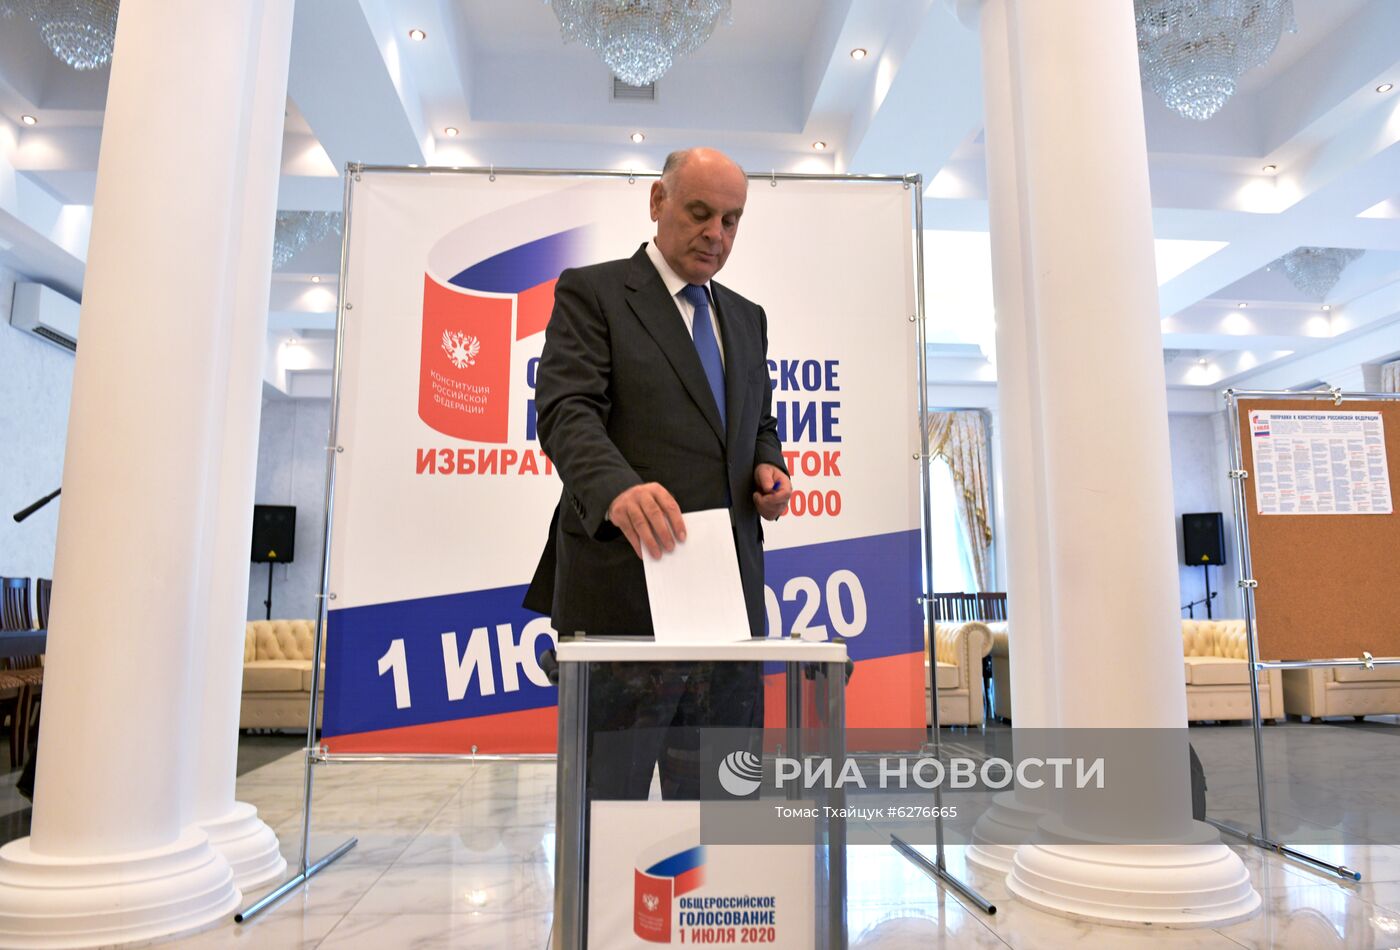 Голосование по внесению изменений в Конституцию РФ в Абхазии 